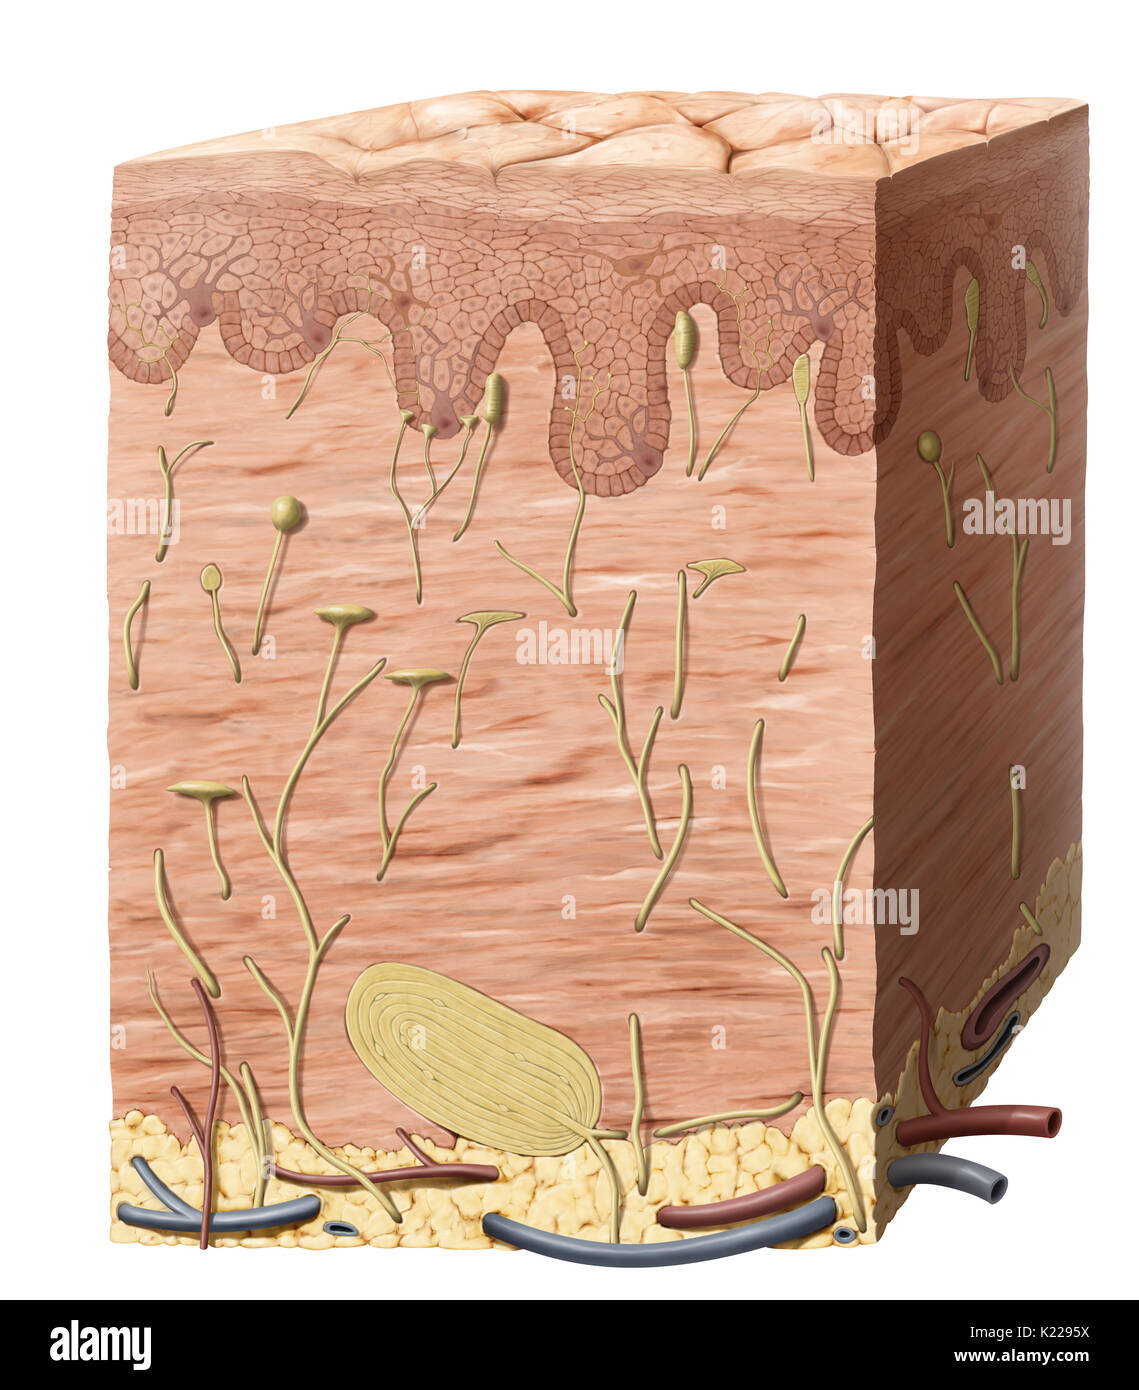 Esterno della busta di protezione del corpo, costituita da tre strati principali: l'epidermide, il derma e l'ipoderma o tessuto sottocutaneo. Foto Stock